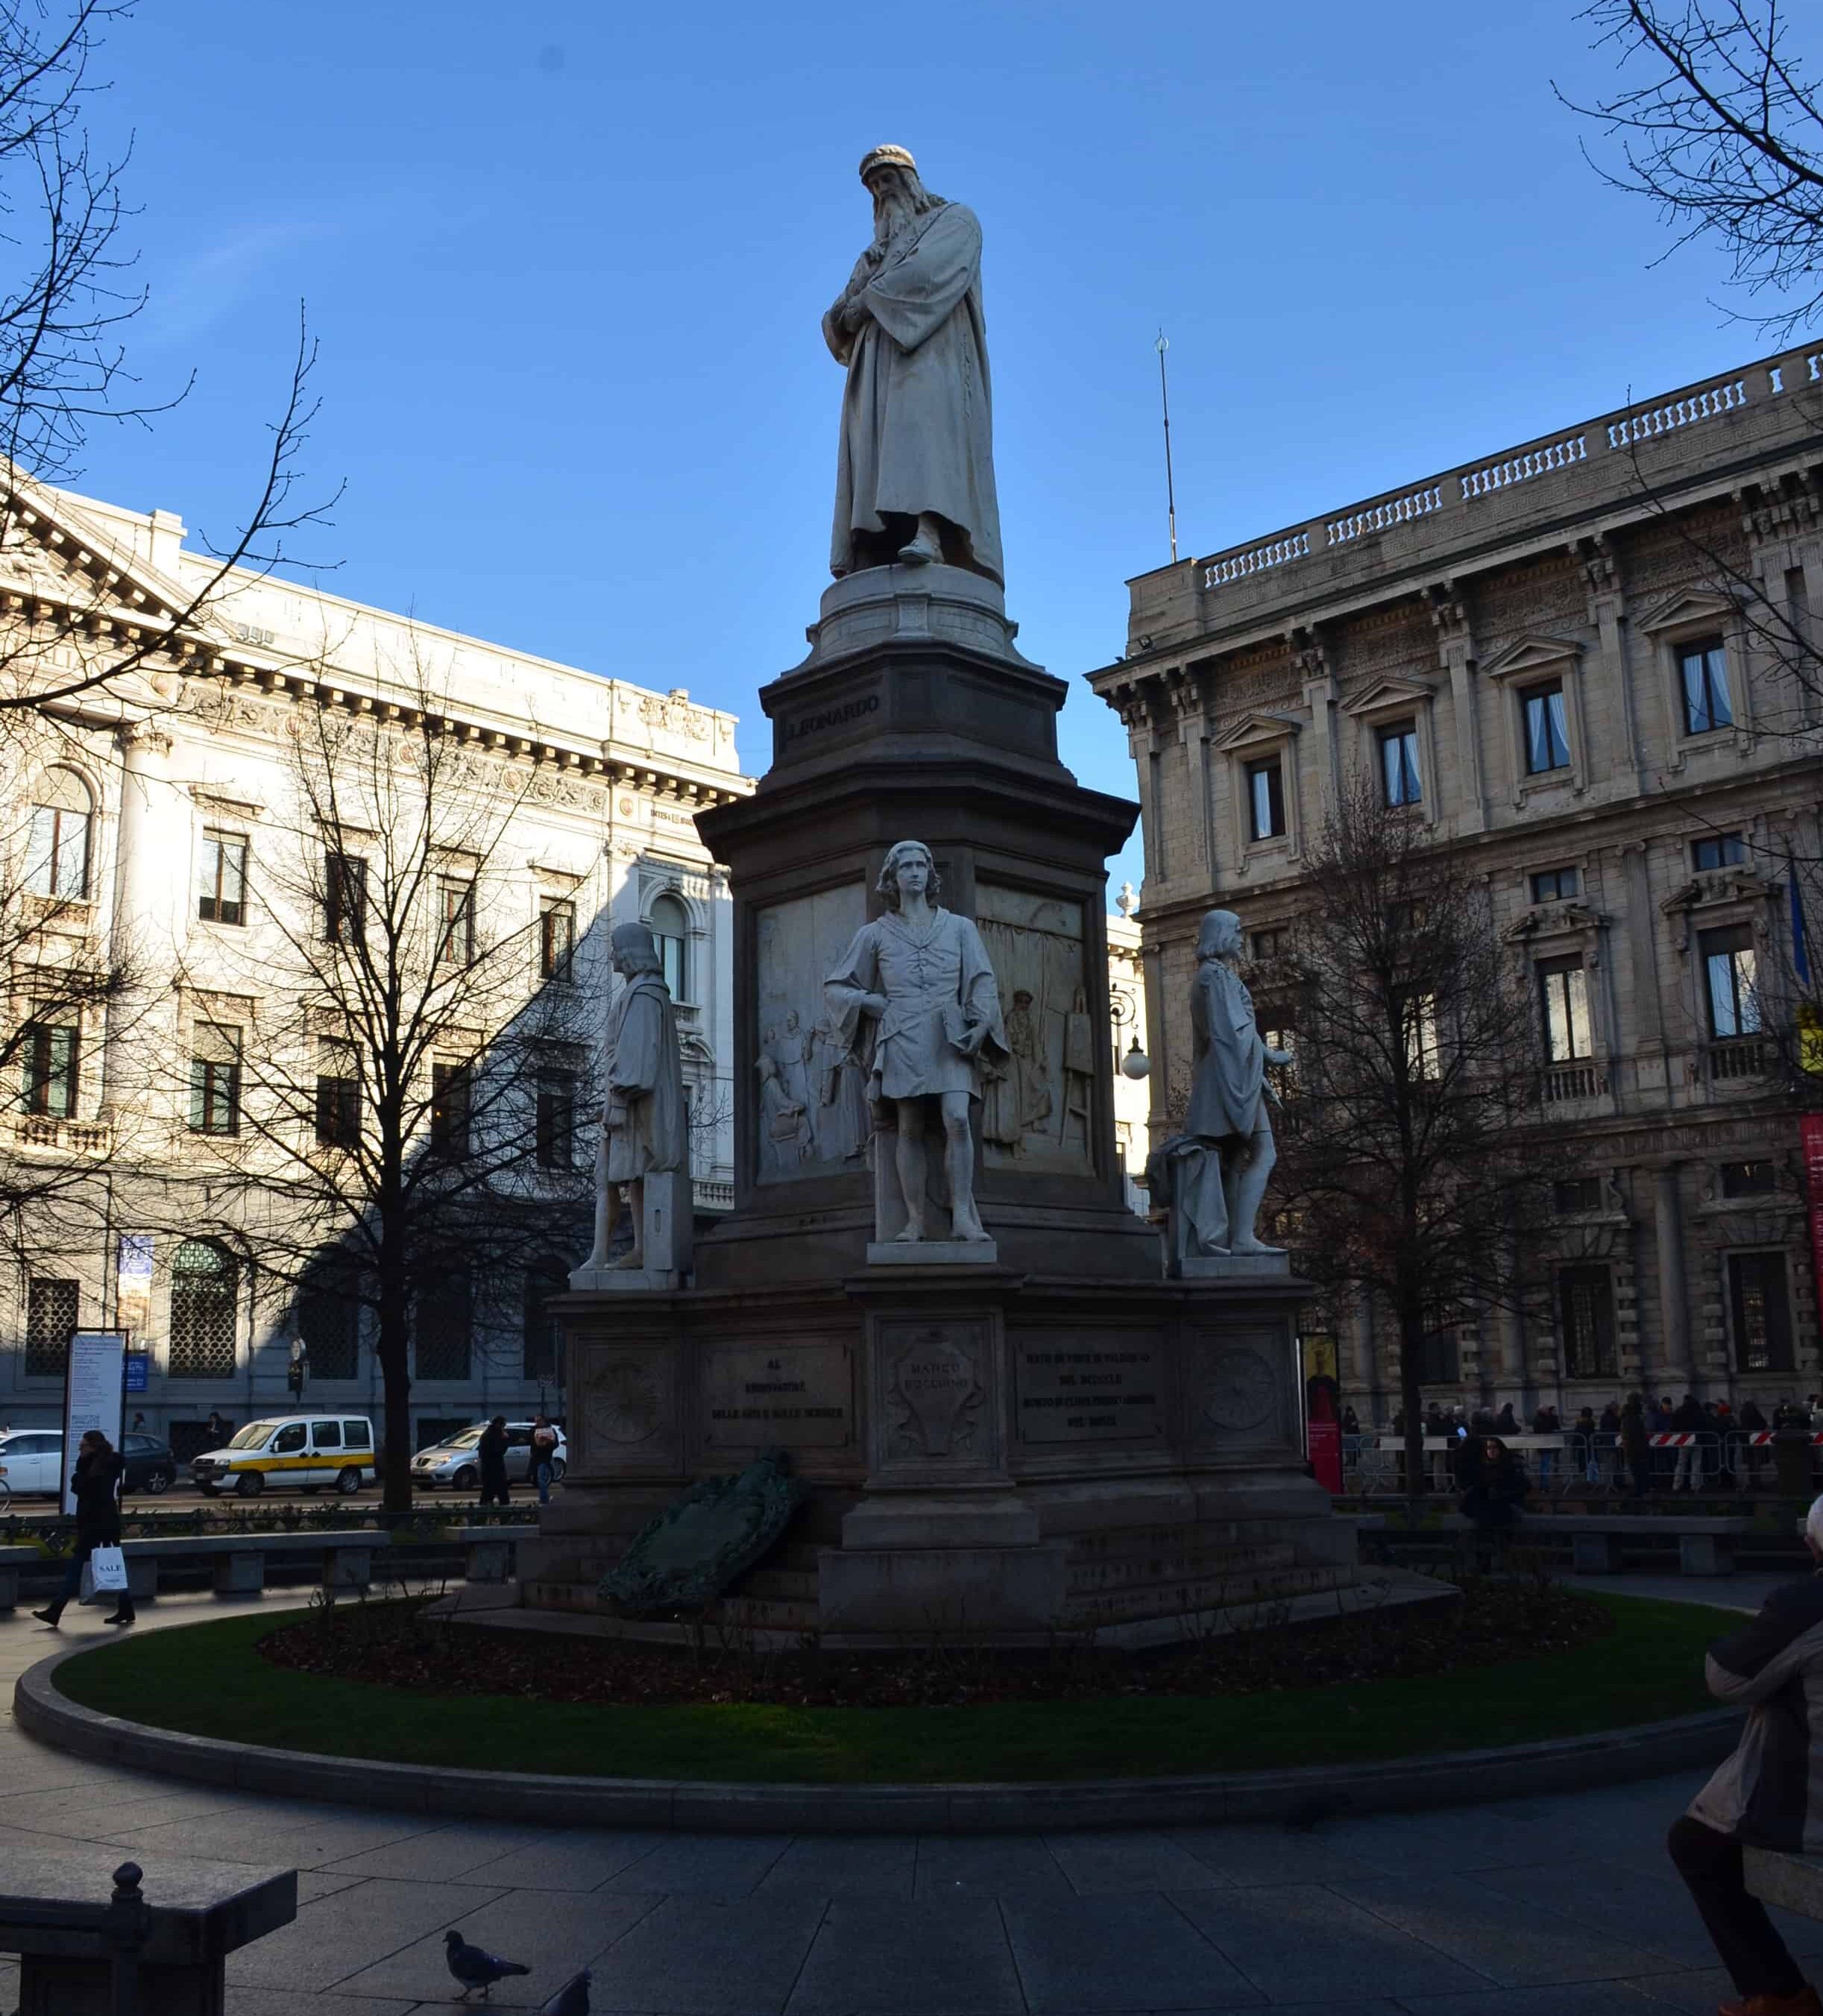 Leonardo da Vinci monument on Piazza della Scala in Milan, Italy